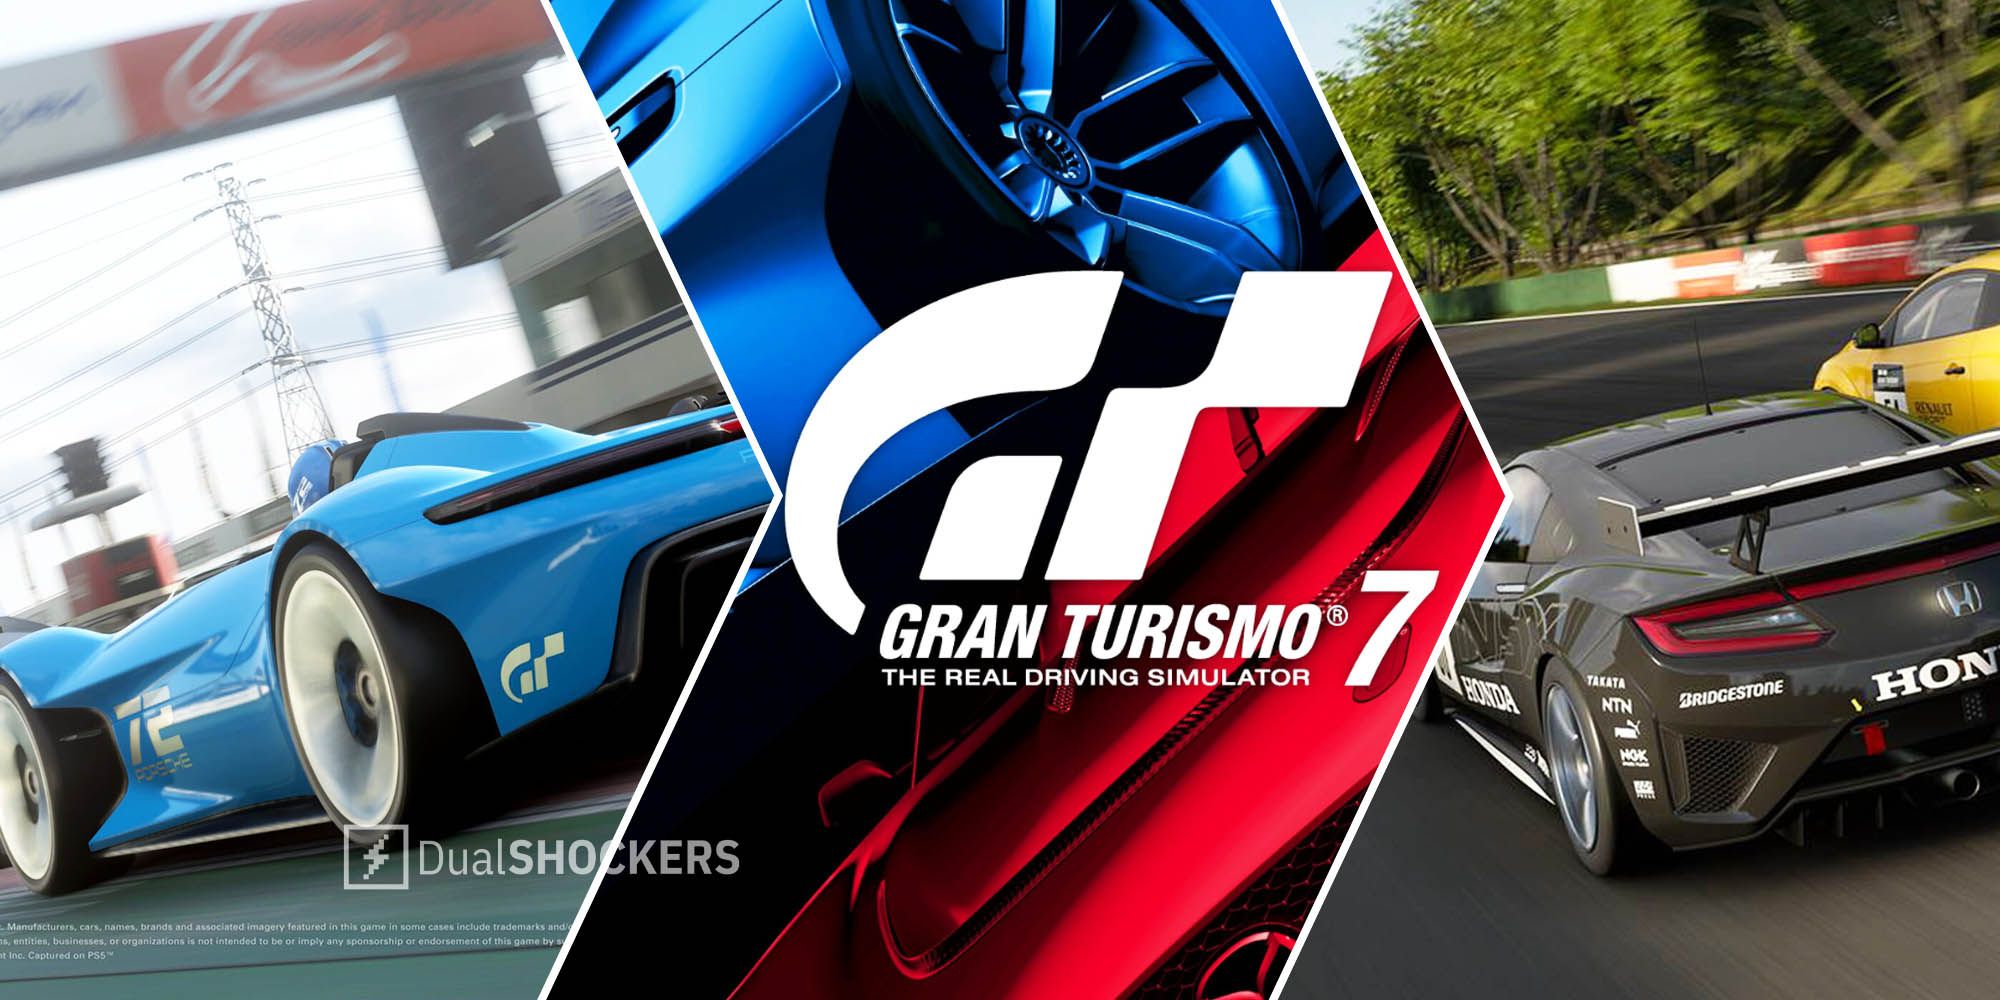 Gran Turismo' creator celebrates the title's 25th anniversary